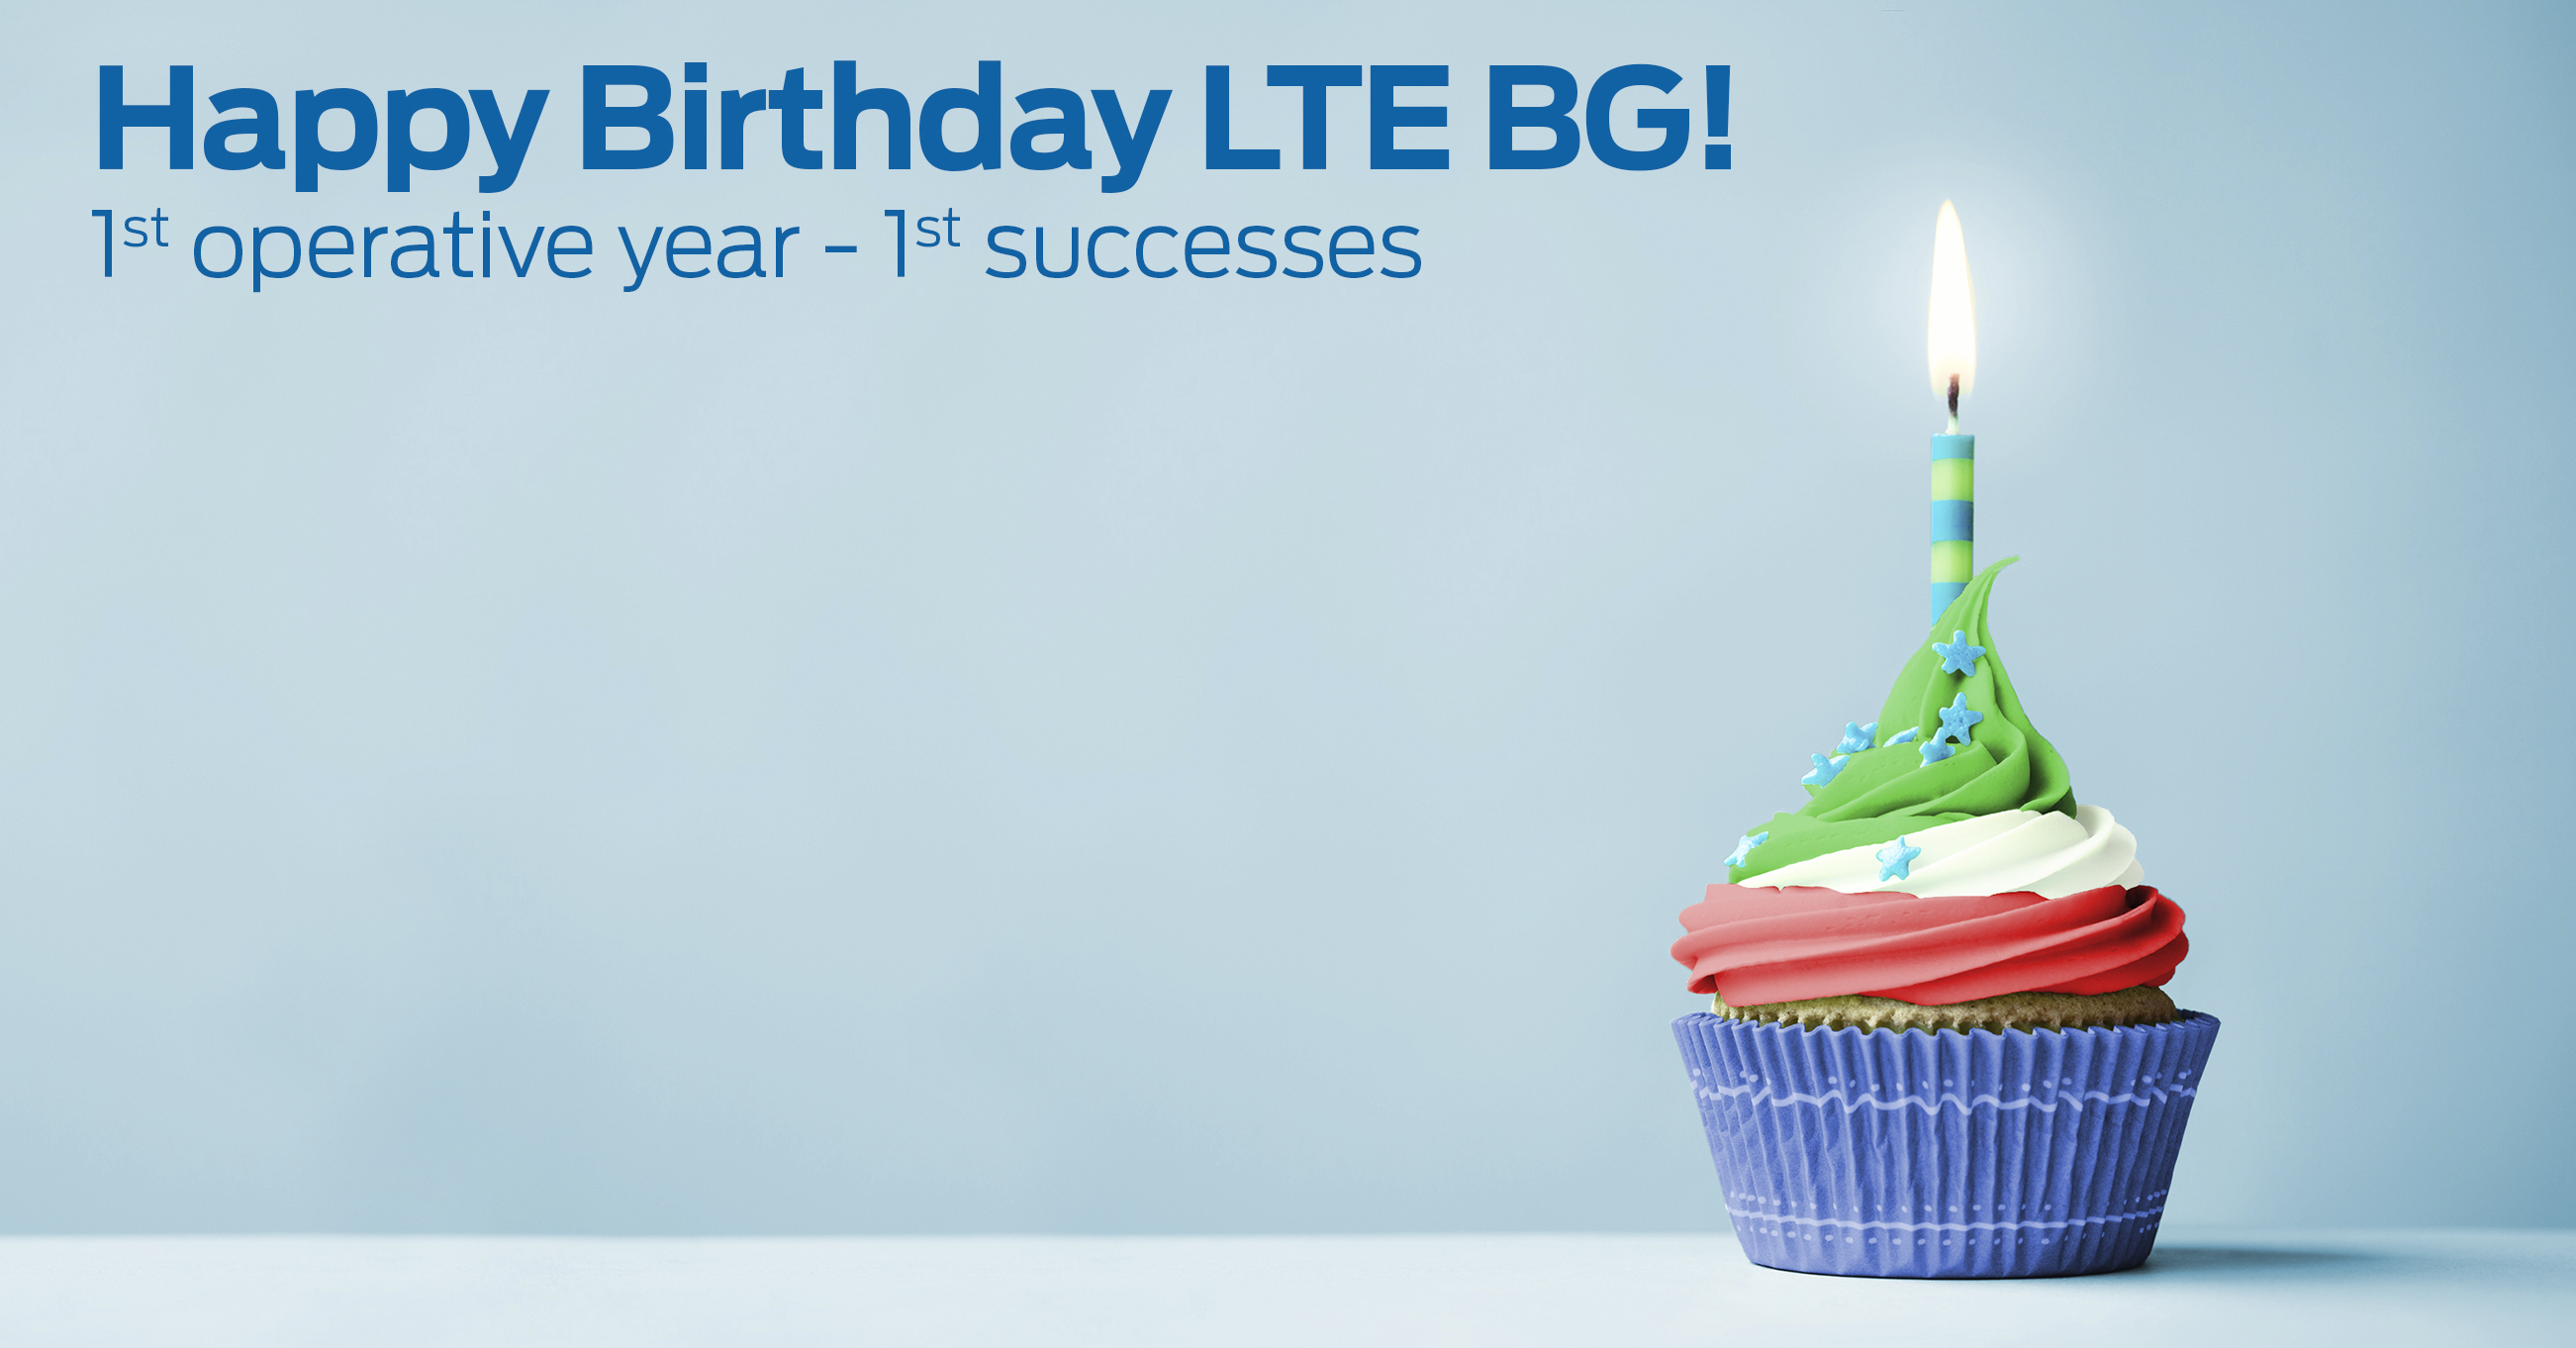 LTE BG - Happy Birthday!